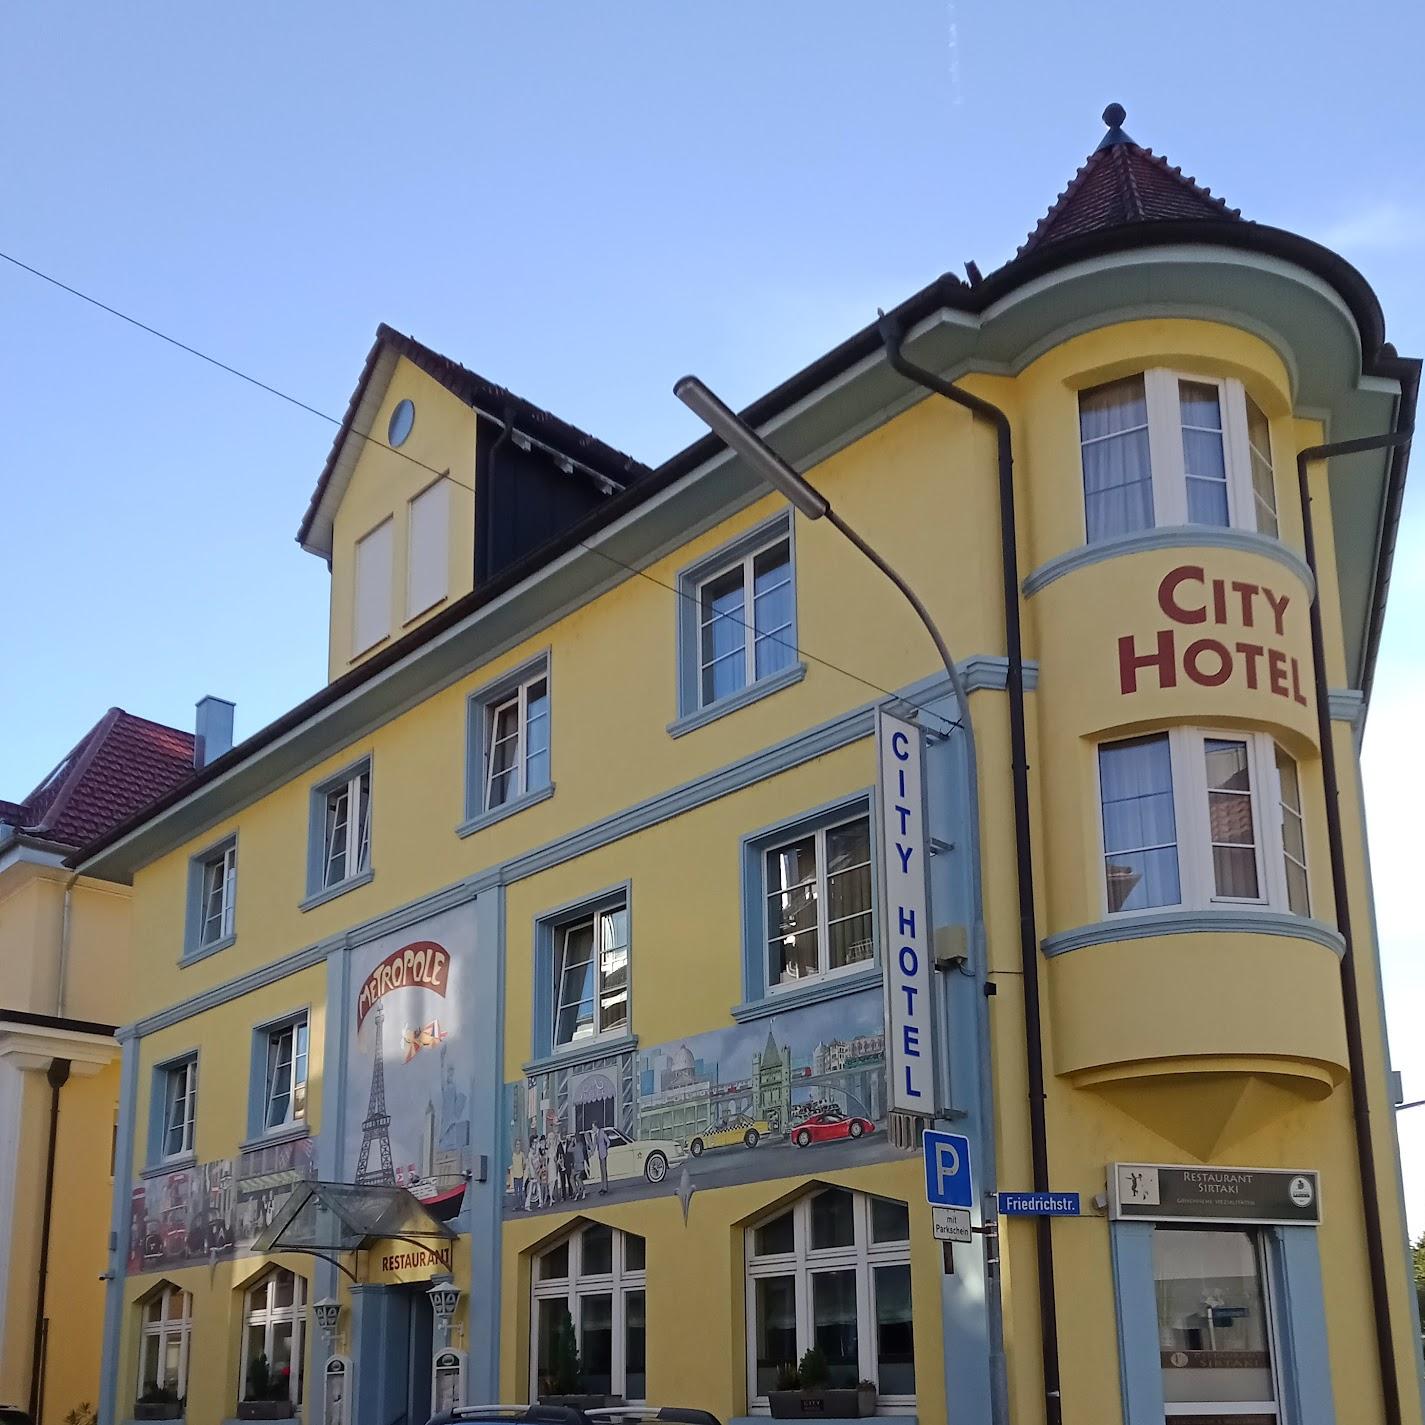 Restaurant "City Hotel" in Schopfheim